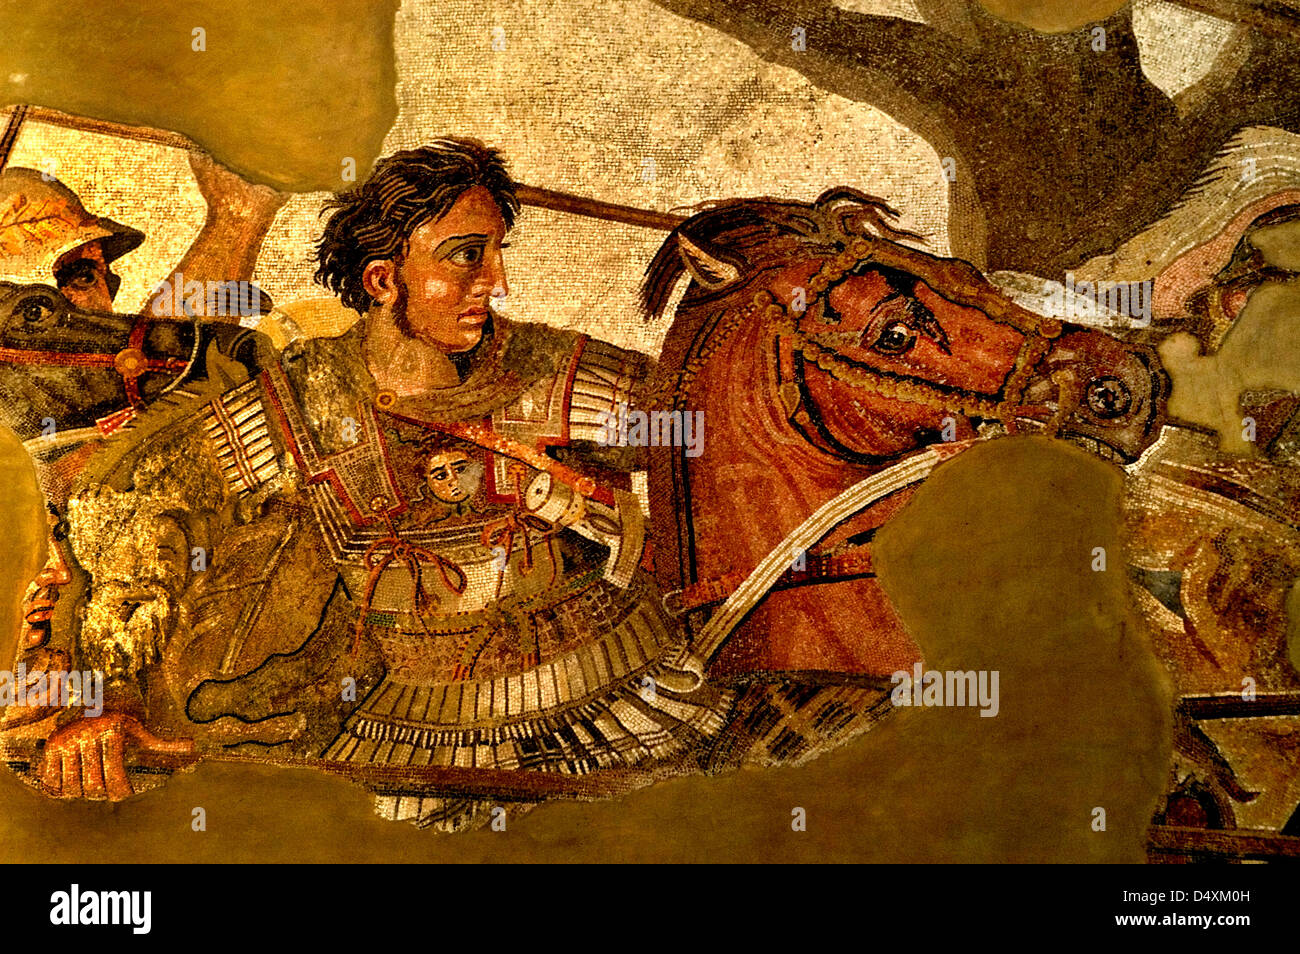 Alexander der große in der Schlacht mit dem persischen König Darius III. Alexander dem Großen Issus 331 v. Chr. Mosaik Pompeji Stockfoto